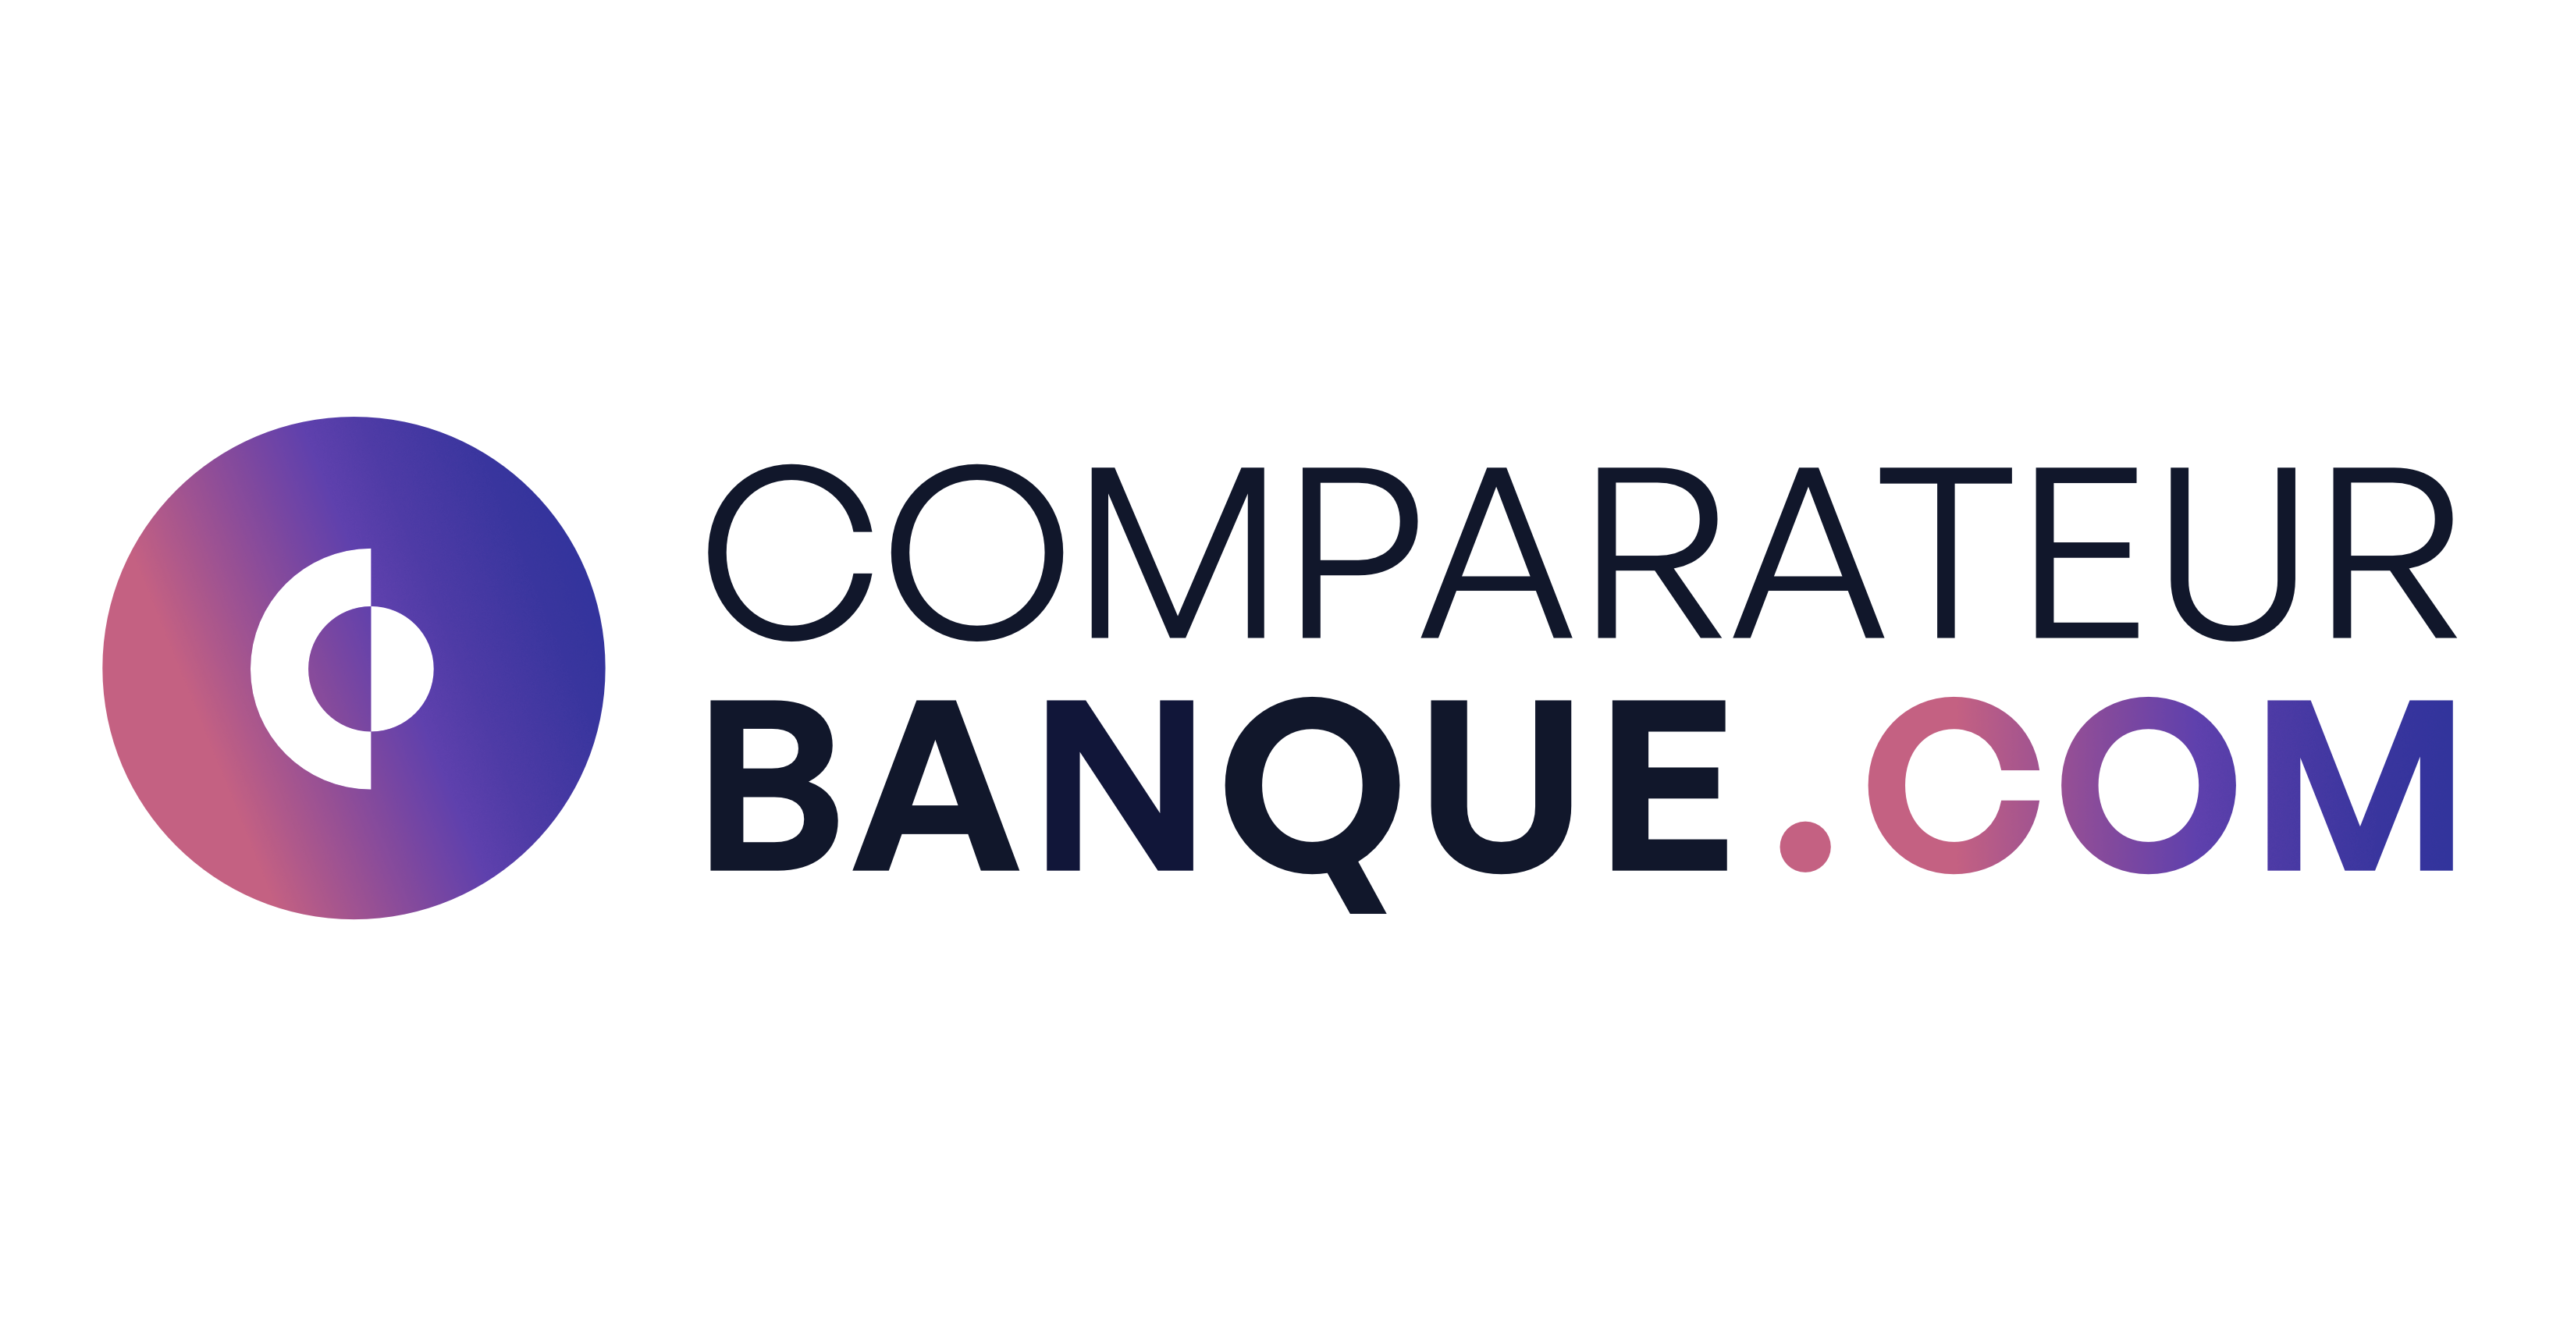 www.comparateurbanque.com